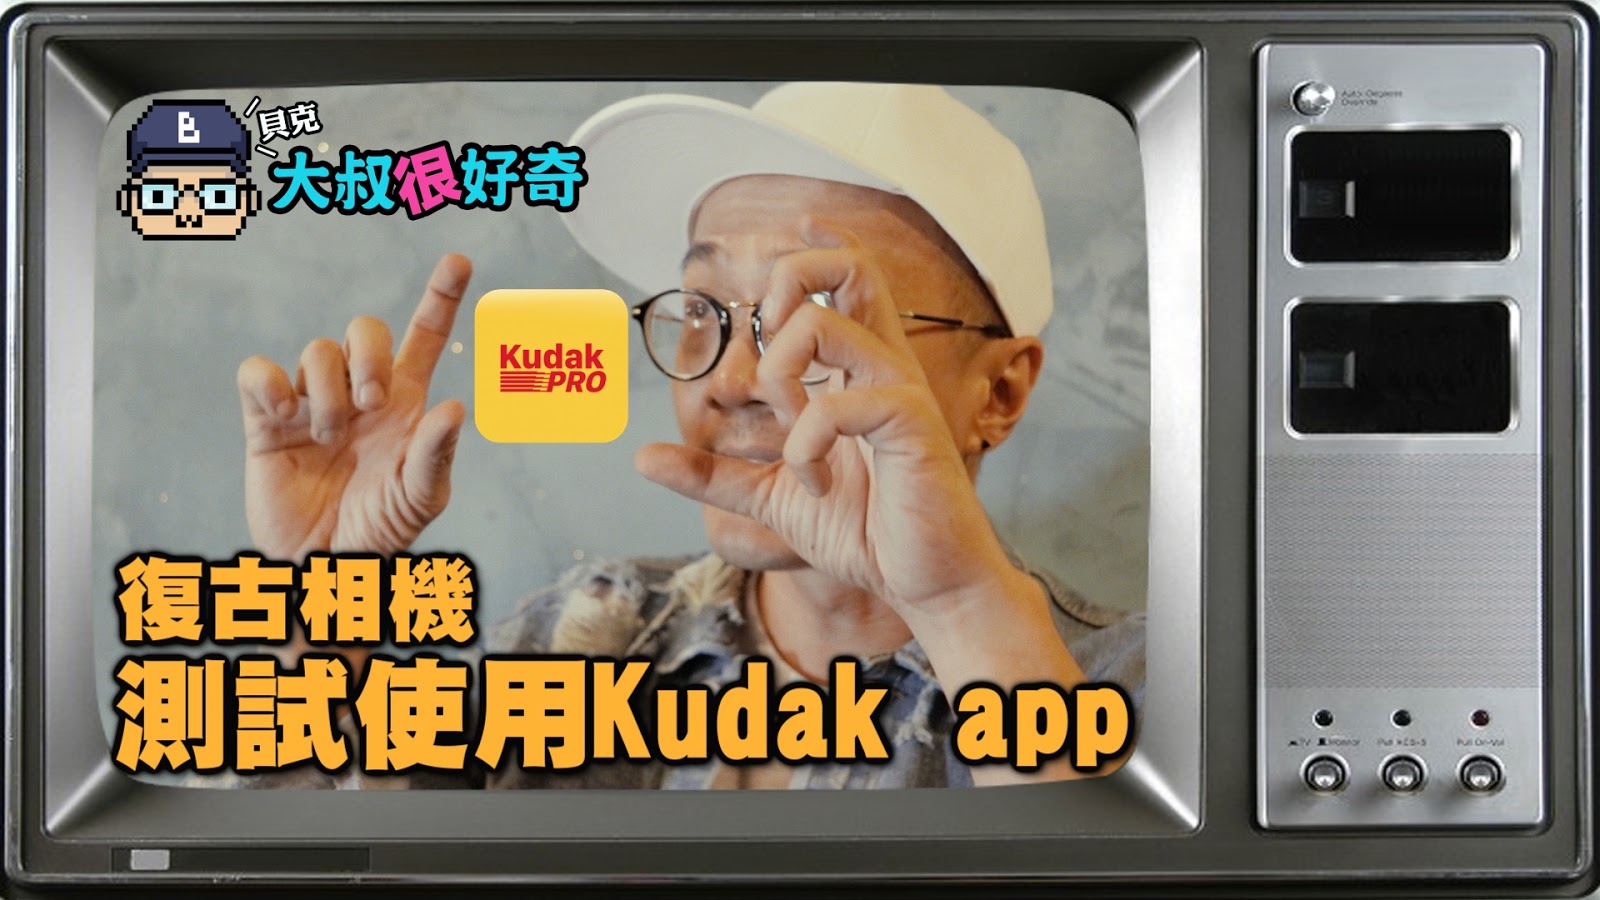 測試使用復古相機app「KUDAK PRO」